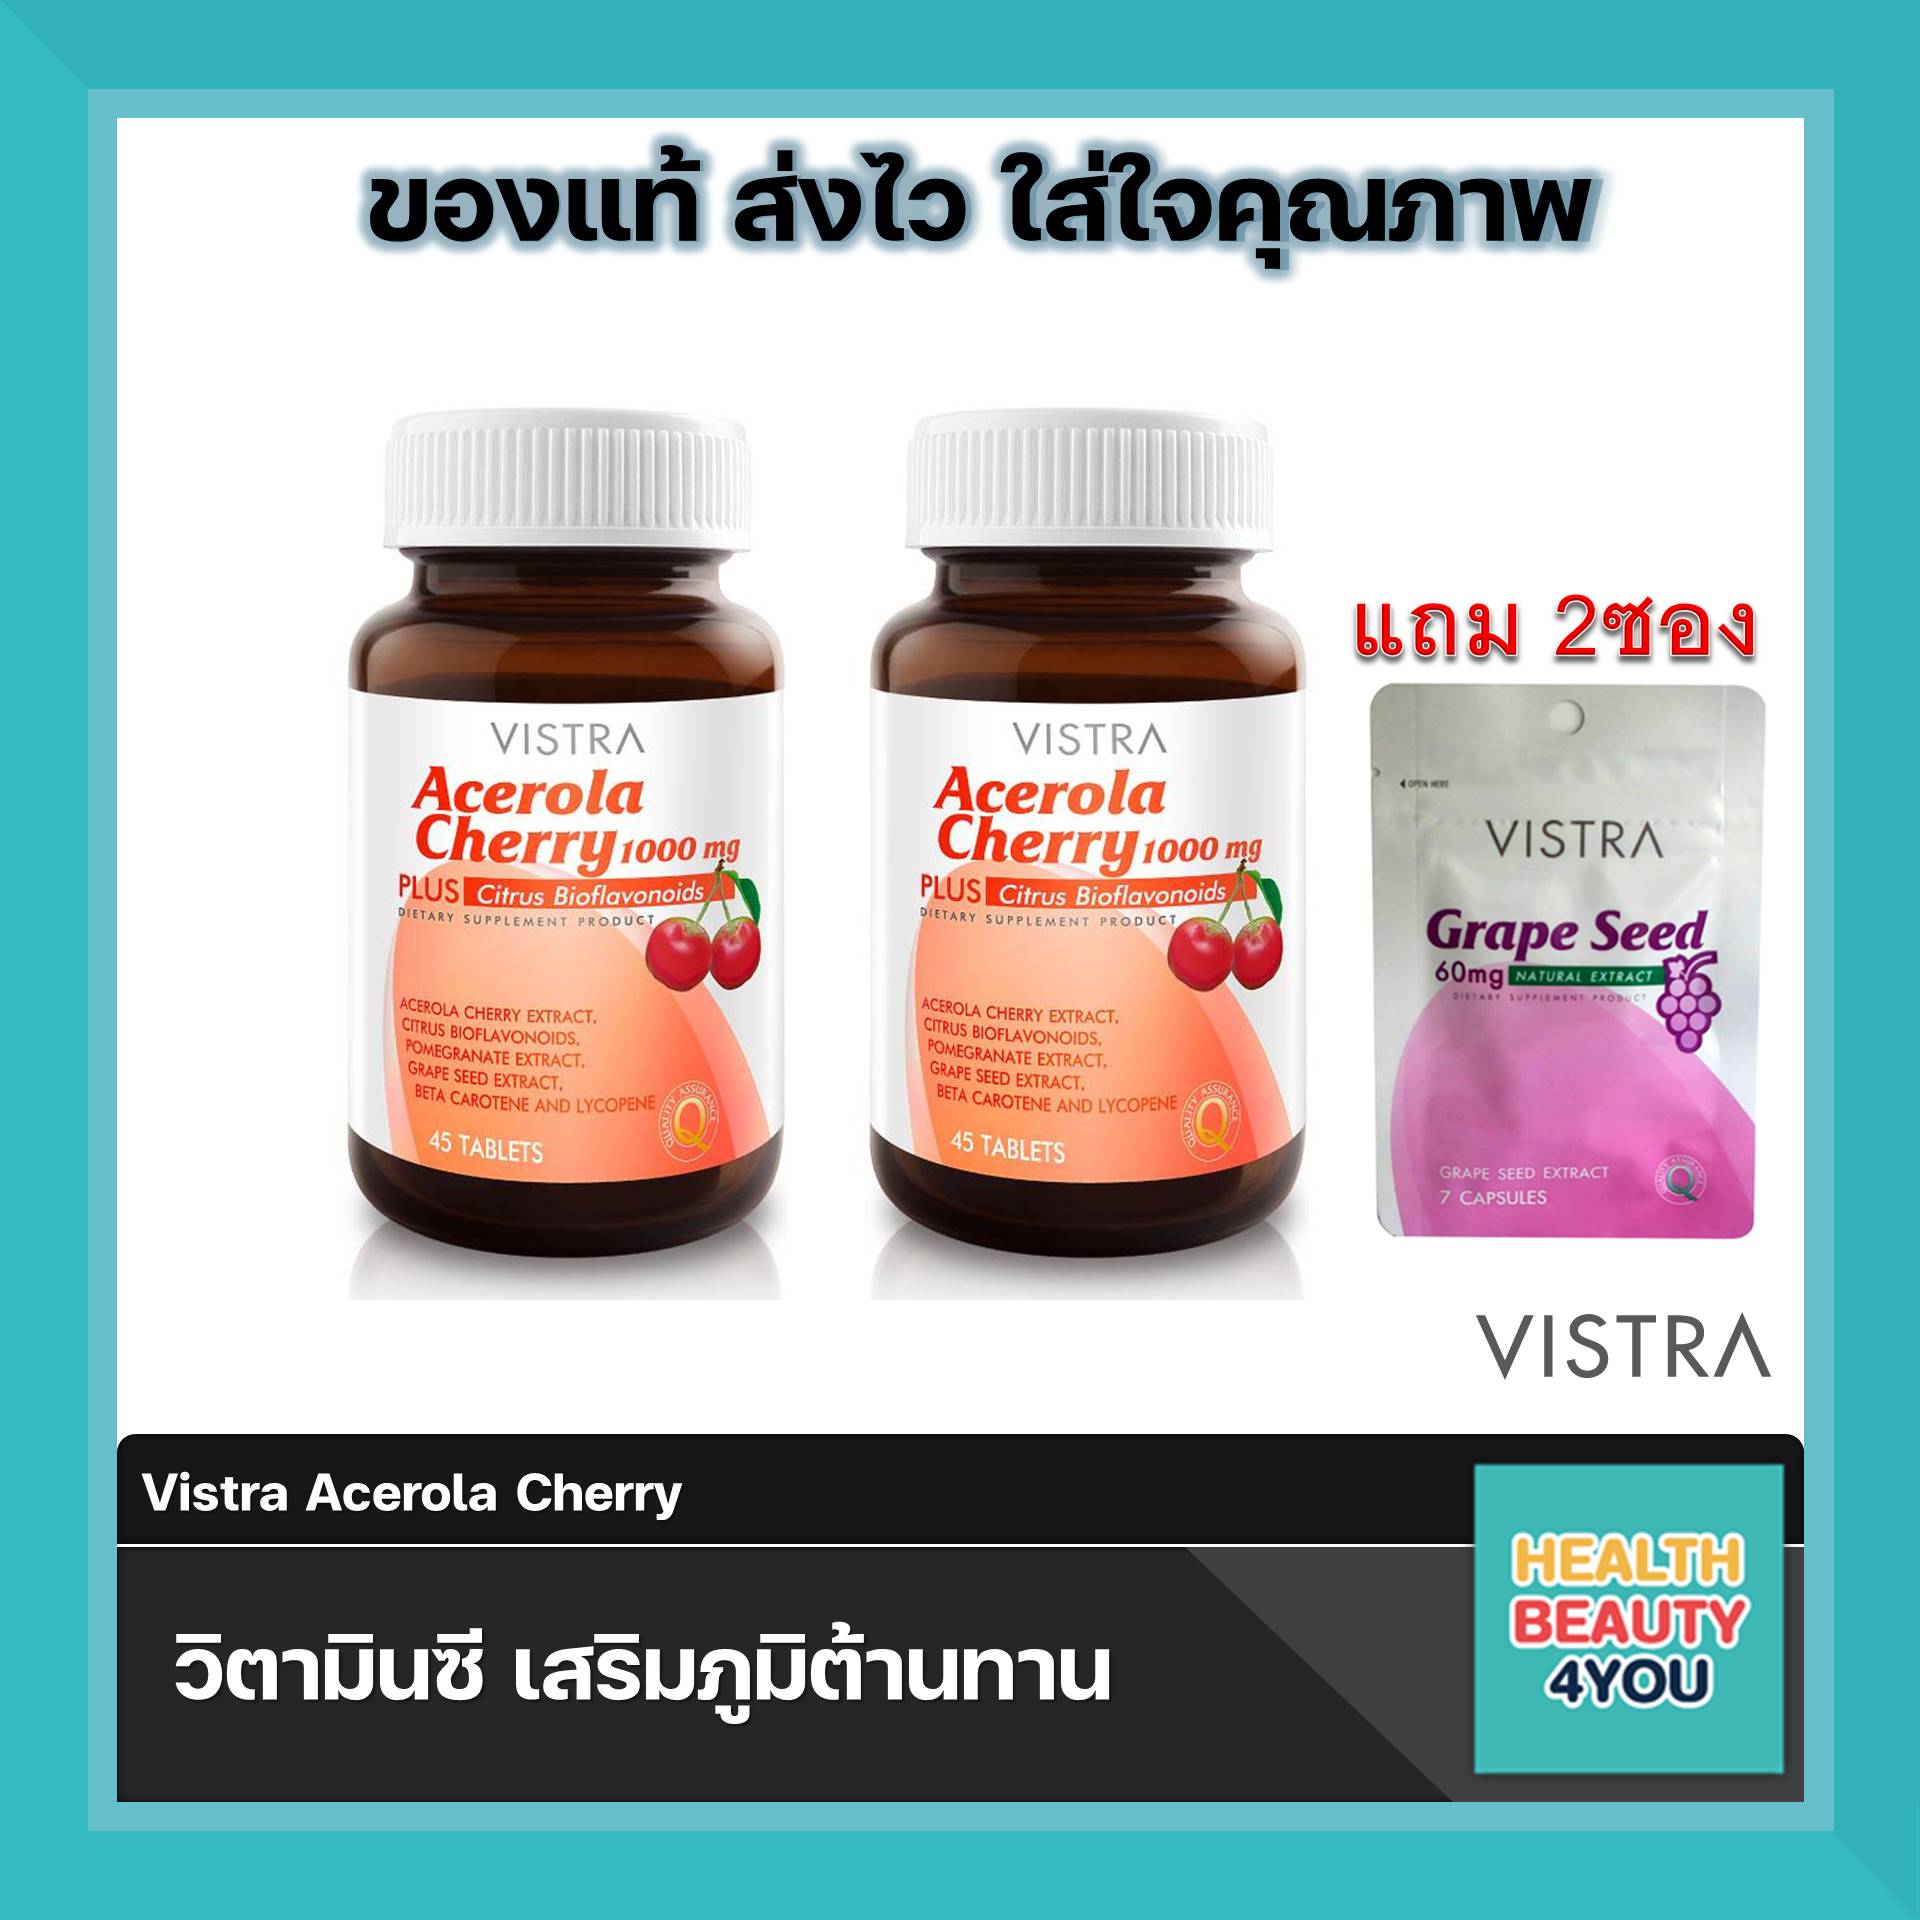 สุดคุ้ม Vistra Acerola Cherry 1000 mg 45 เม็ด จำนวน 2 ขวด แถมฟรี Vistra Grape seed 60mg จำนวน 2 ซอง